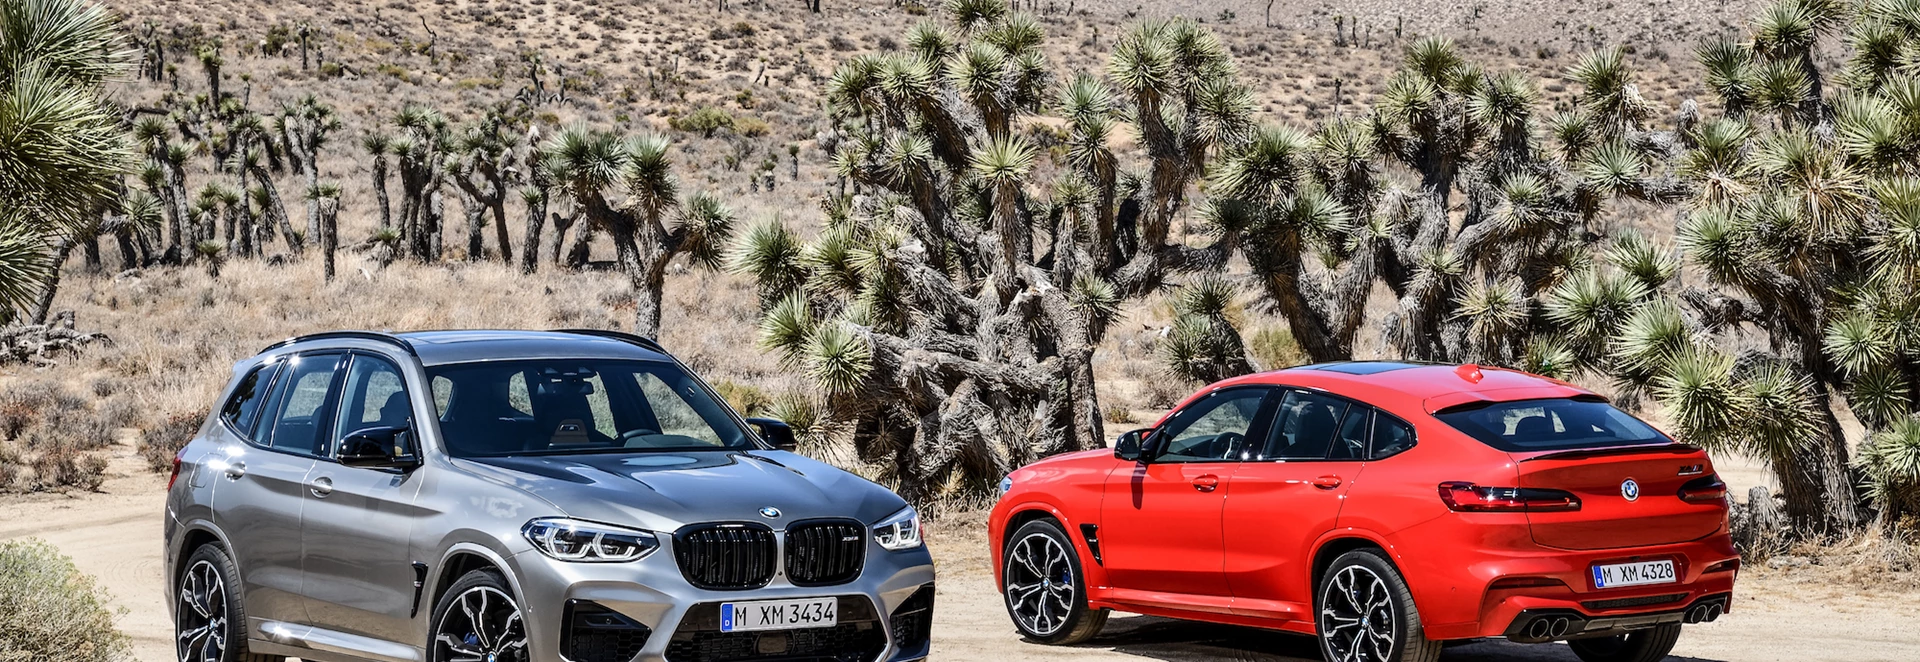 2019 BMW X3 M and X4 M revealed